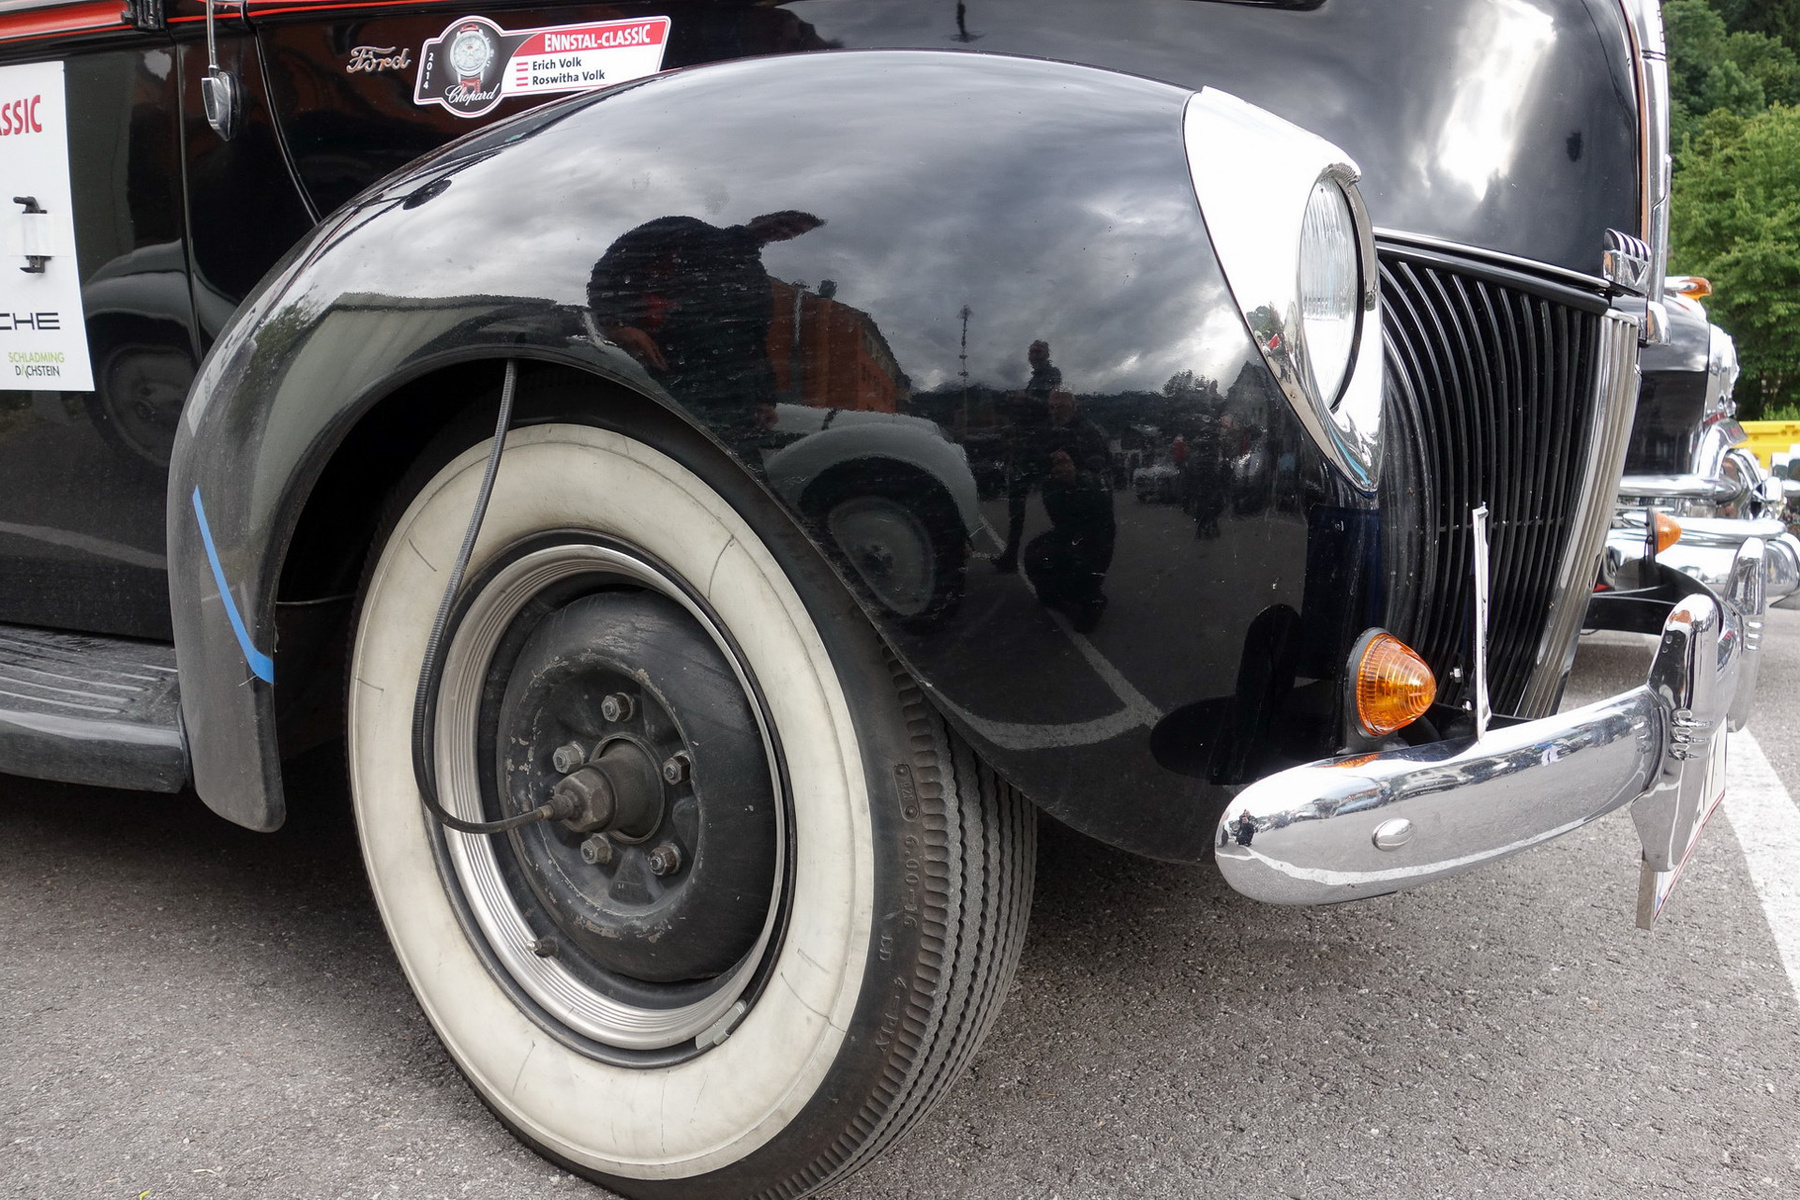 Lincoln Model K Le Baron Coupe - a híres filmsztárnak, Bob Hope-nak is ilyenje volt